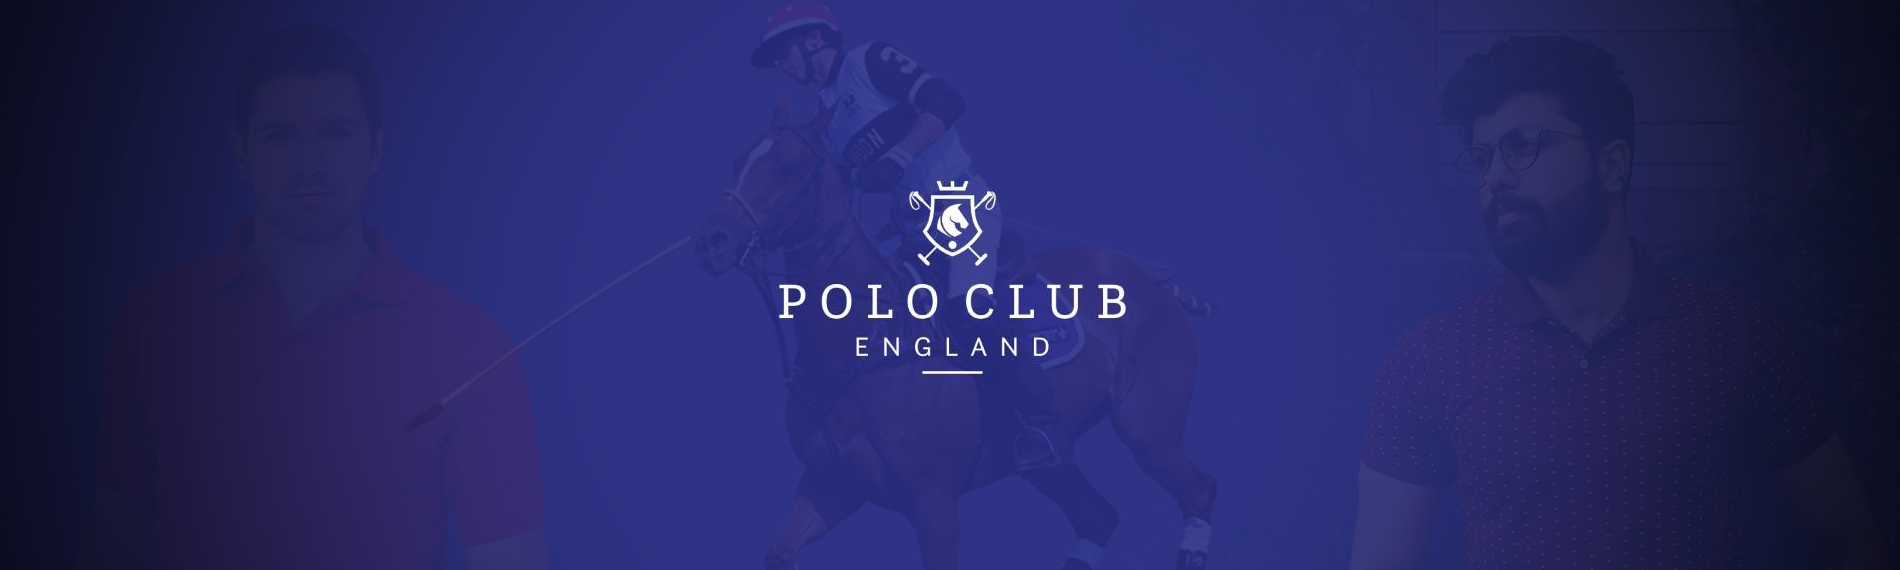 banner da empresa Polo Club Centro